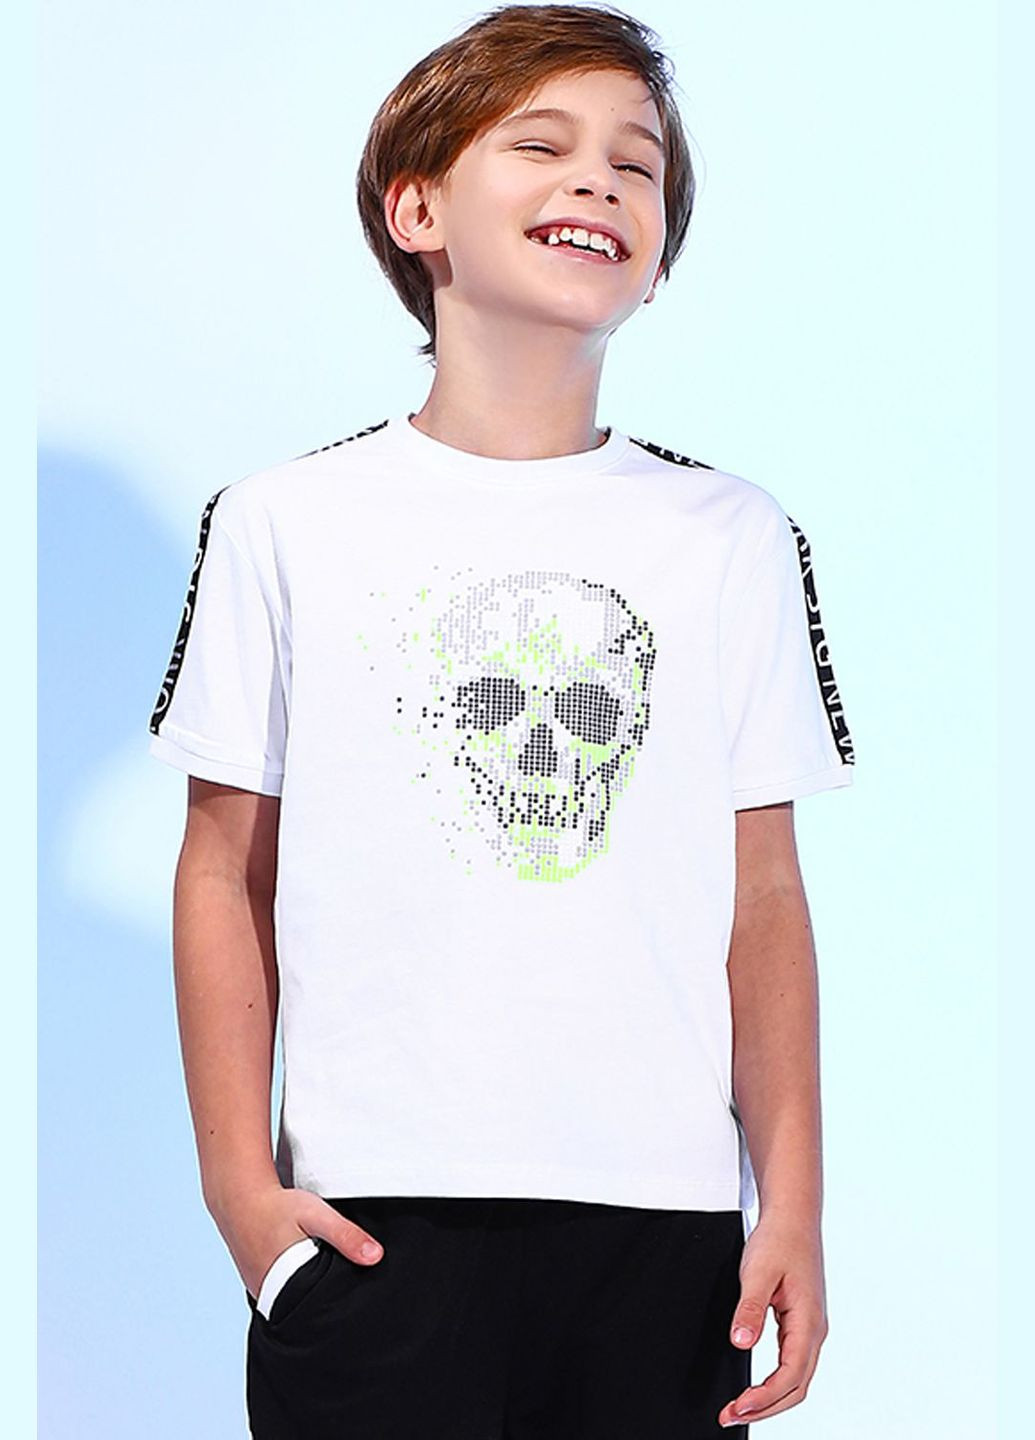 Белая демисезонная футболка для мальчика stg252 белая с черепом 26 (106 см) Street Gang